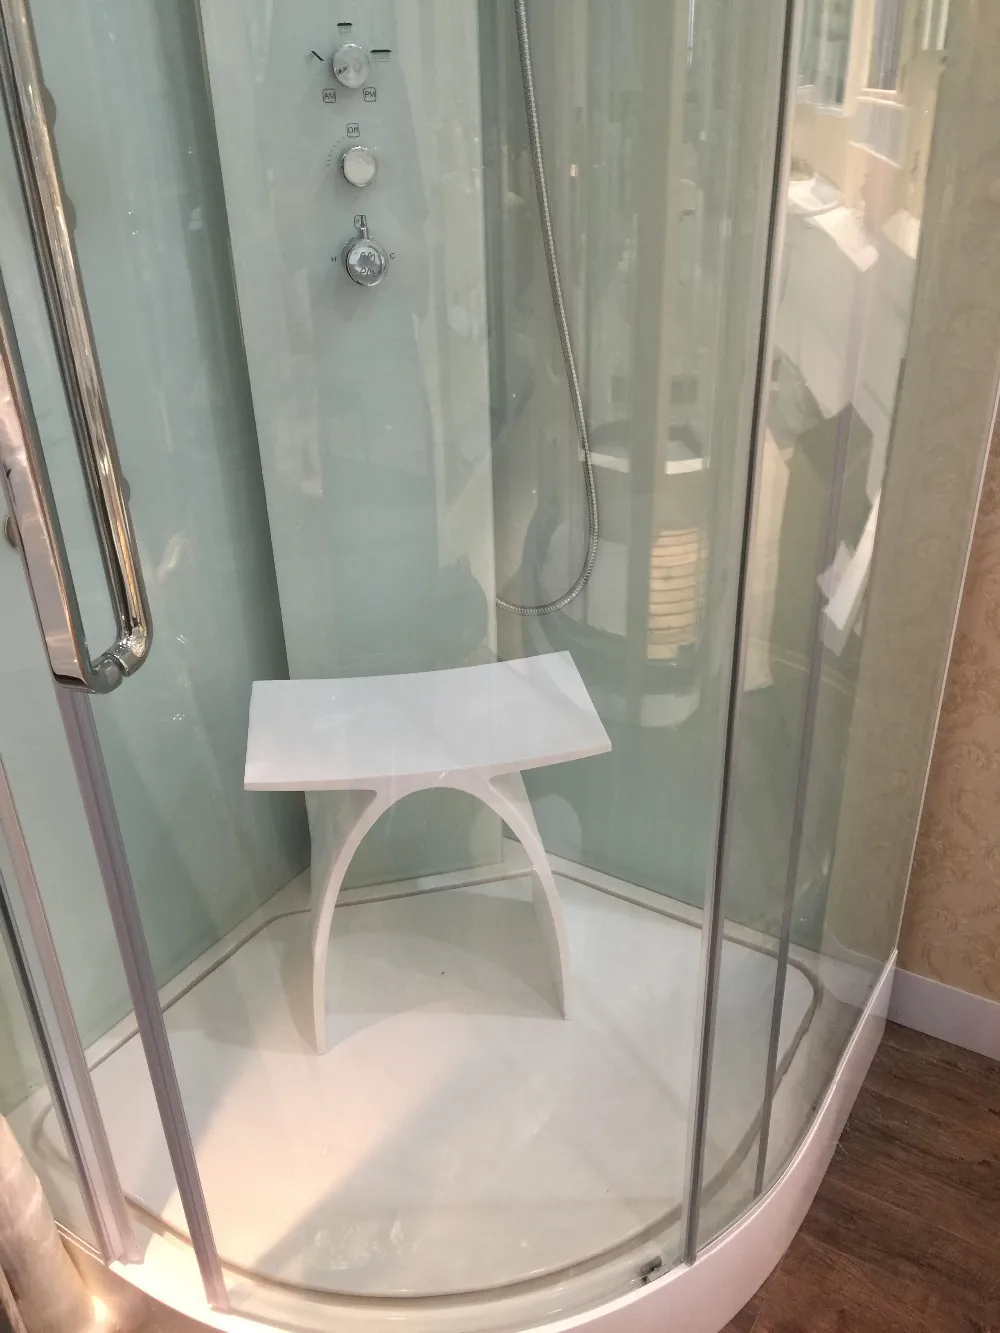 Ванная комната твердая поверхностная Смола скамейка душевая кабина стул Suana стул изогнутые сиденья 0102